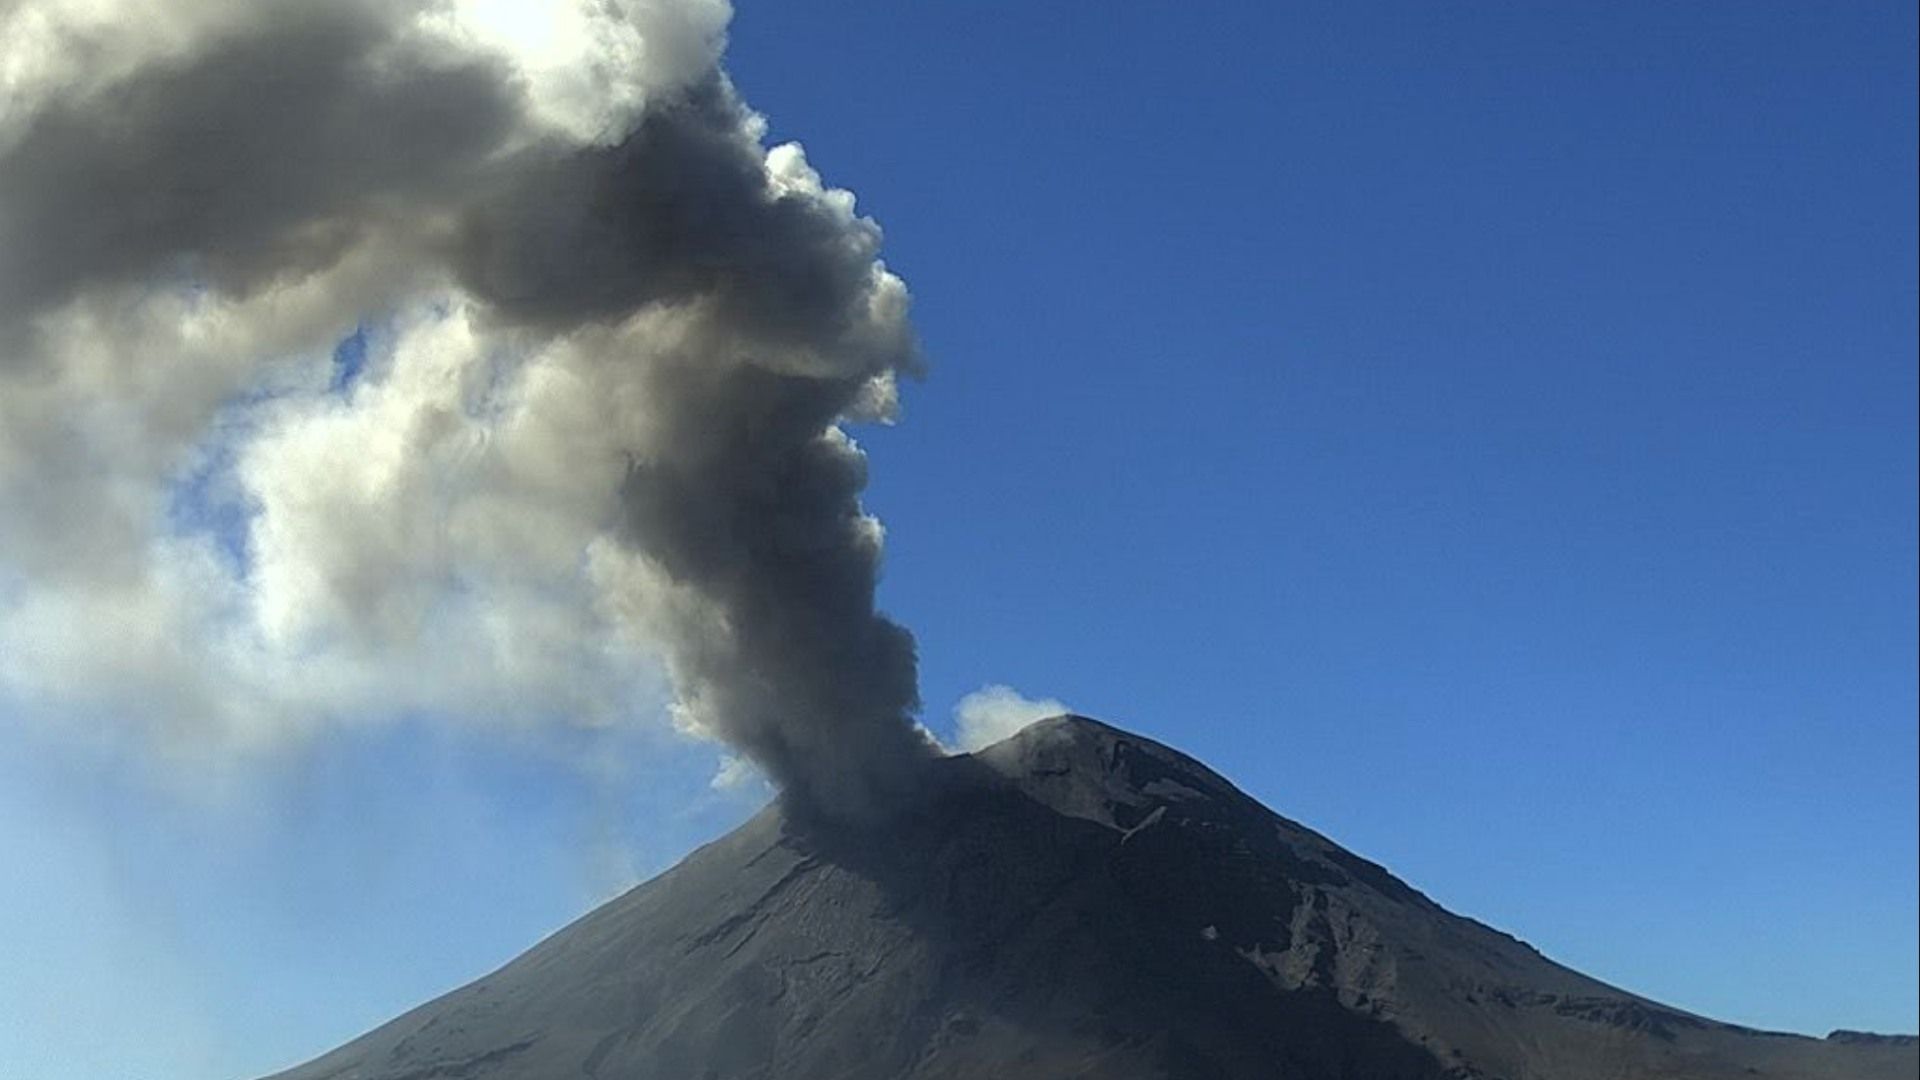 Volcán Popocatépetl: La Actividad Continúa, Afecta el Aire y Así se Ve el Color de la Fumarola